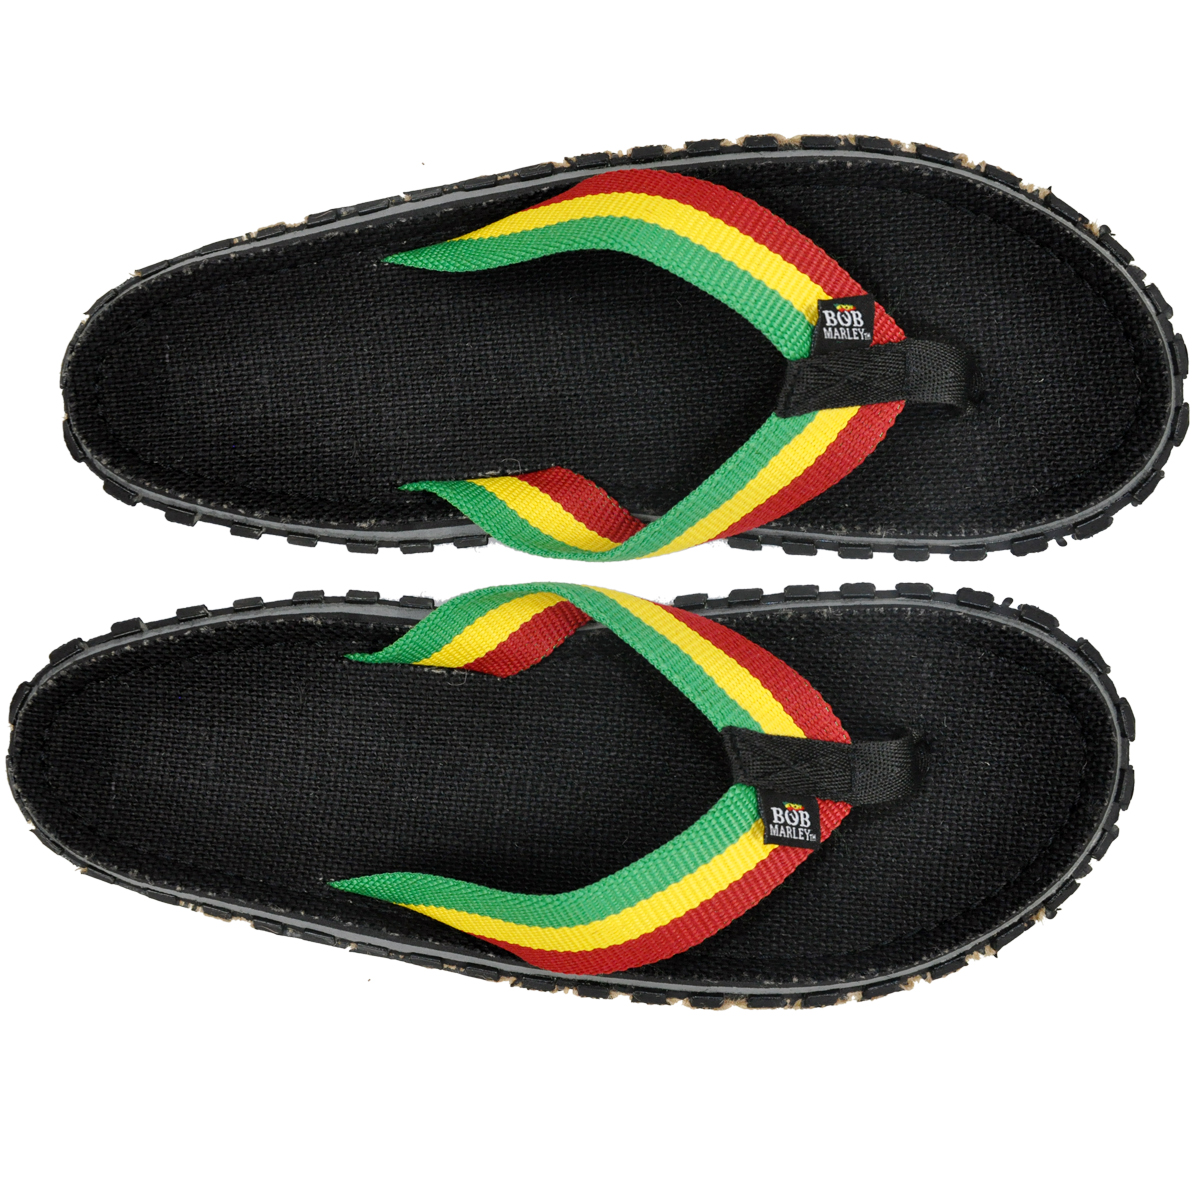 reggae flip flops